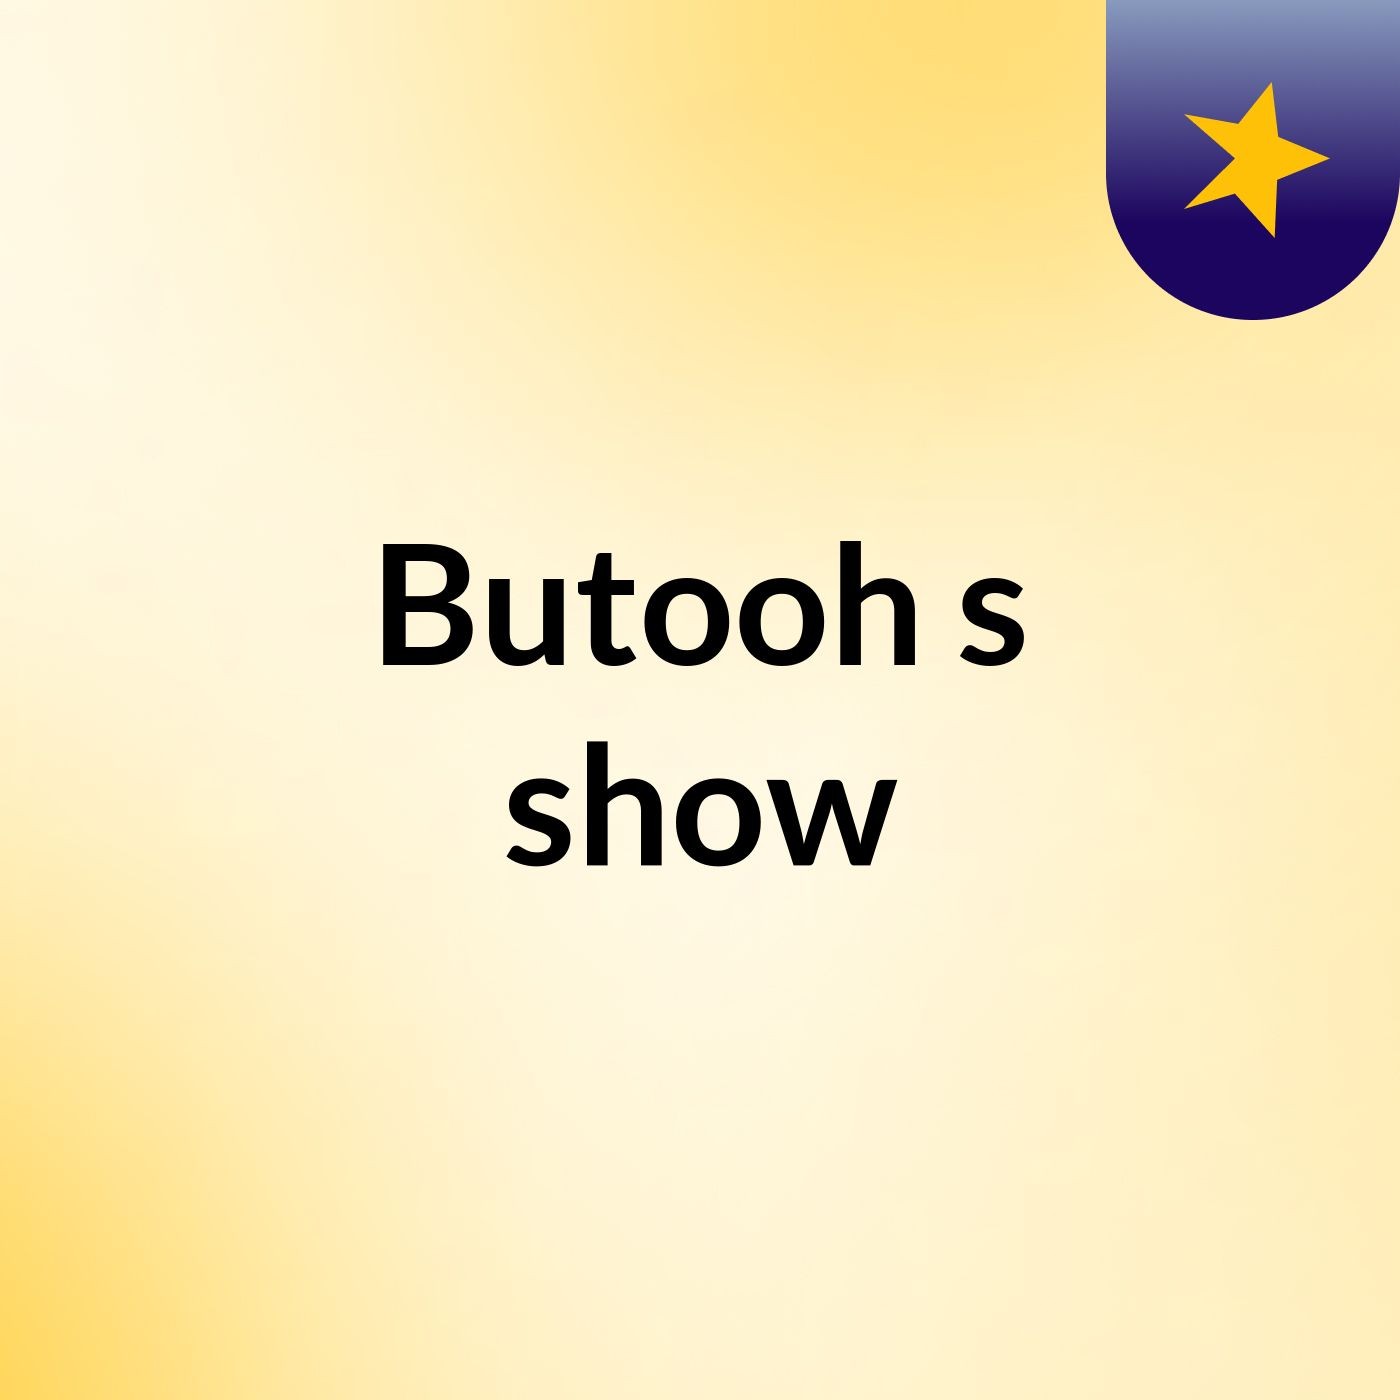 Butooh's show